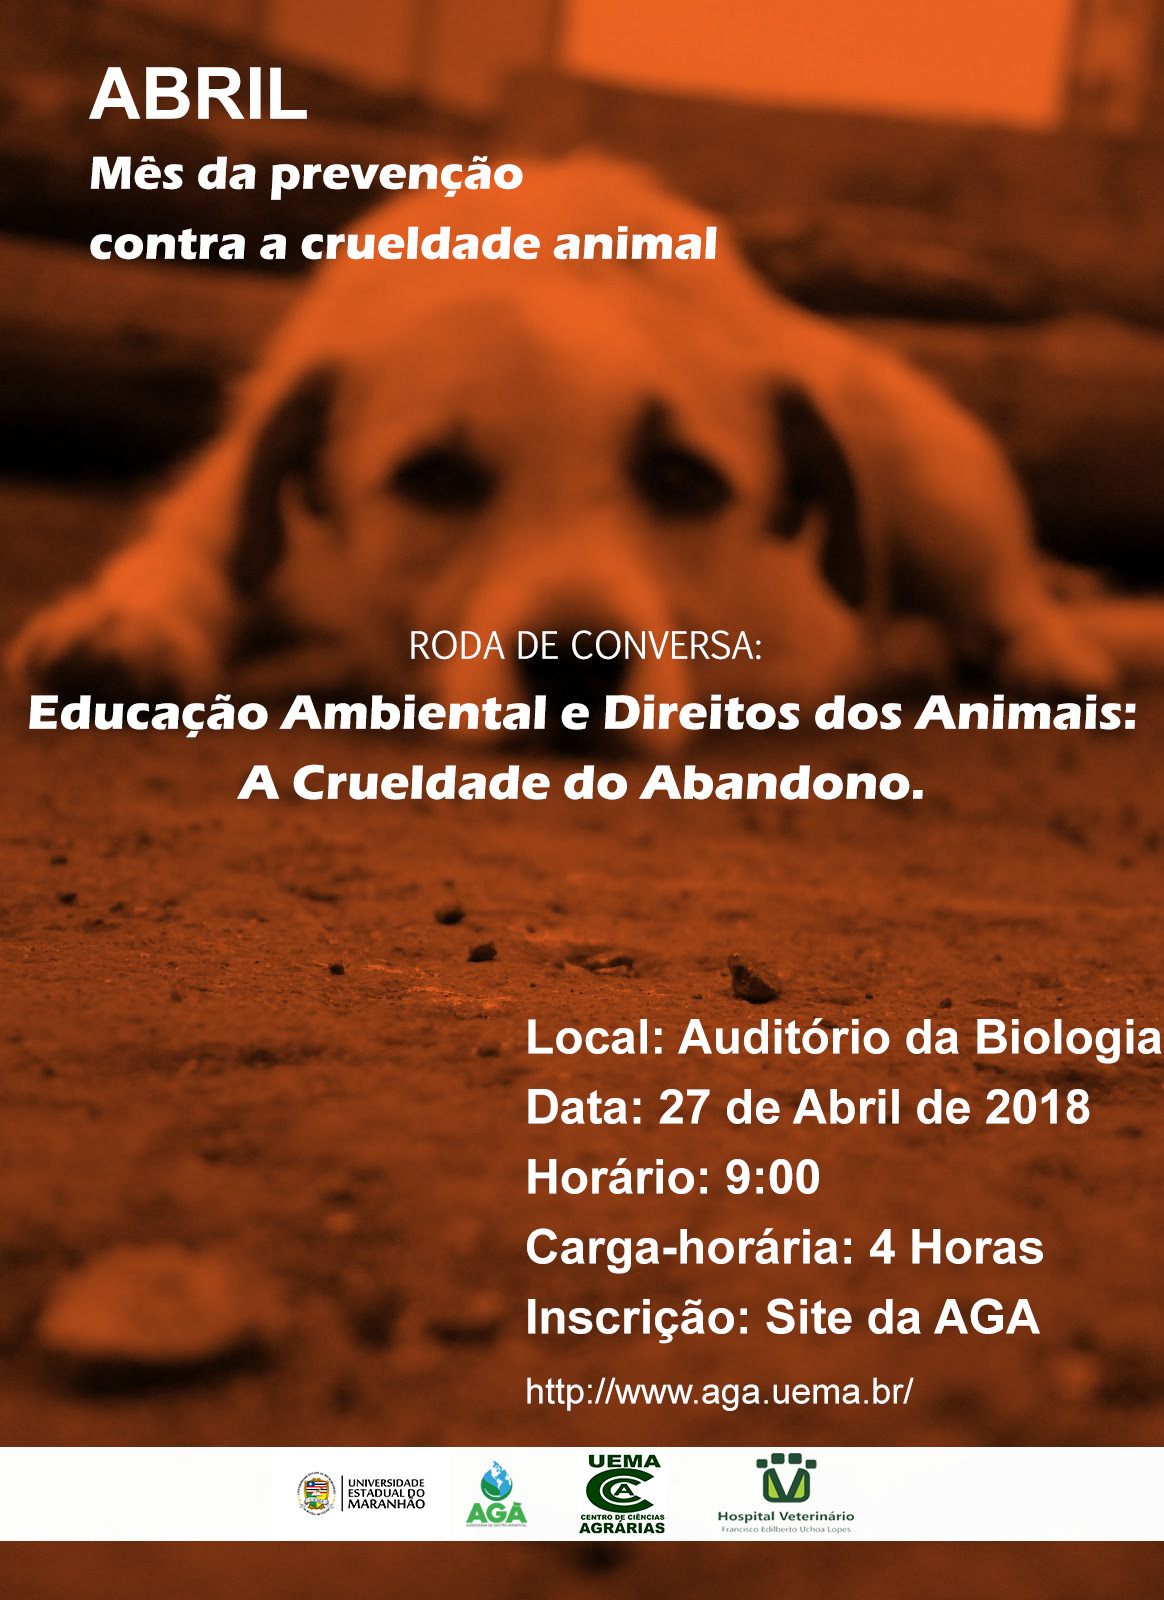 Roda de Conversa “Educação Ambiental e Direito dos Animais: A Crueldade do Abandono”